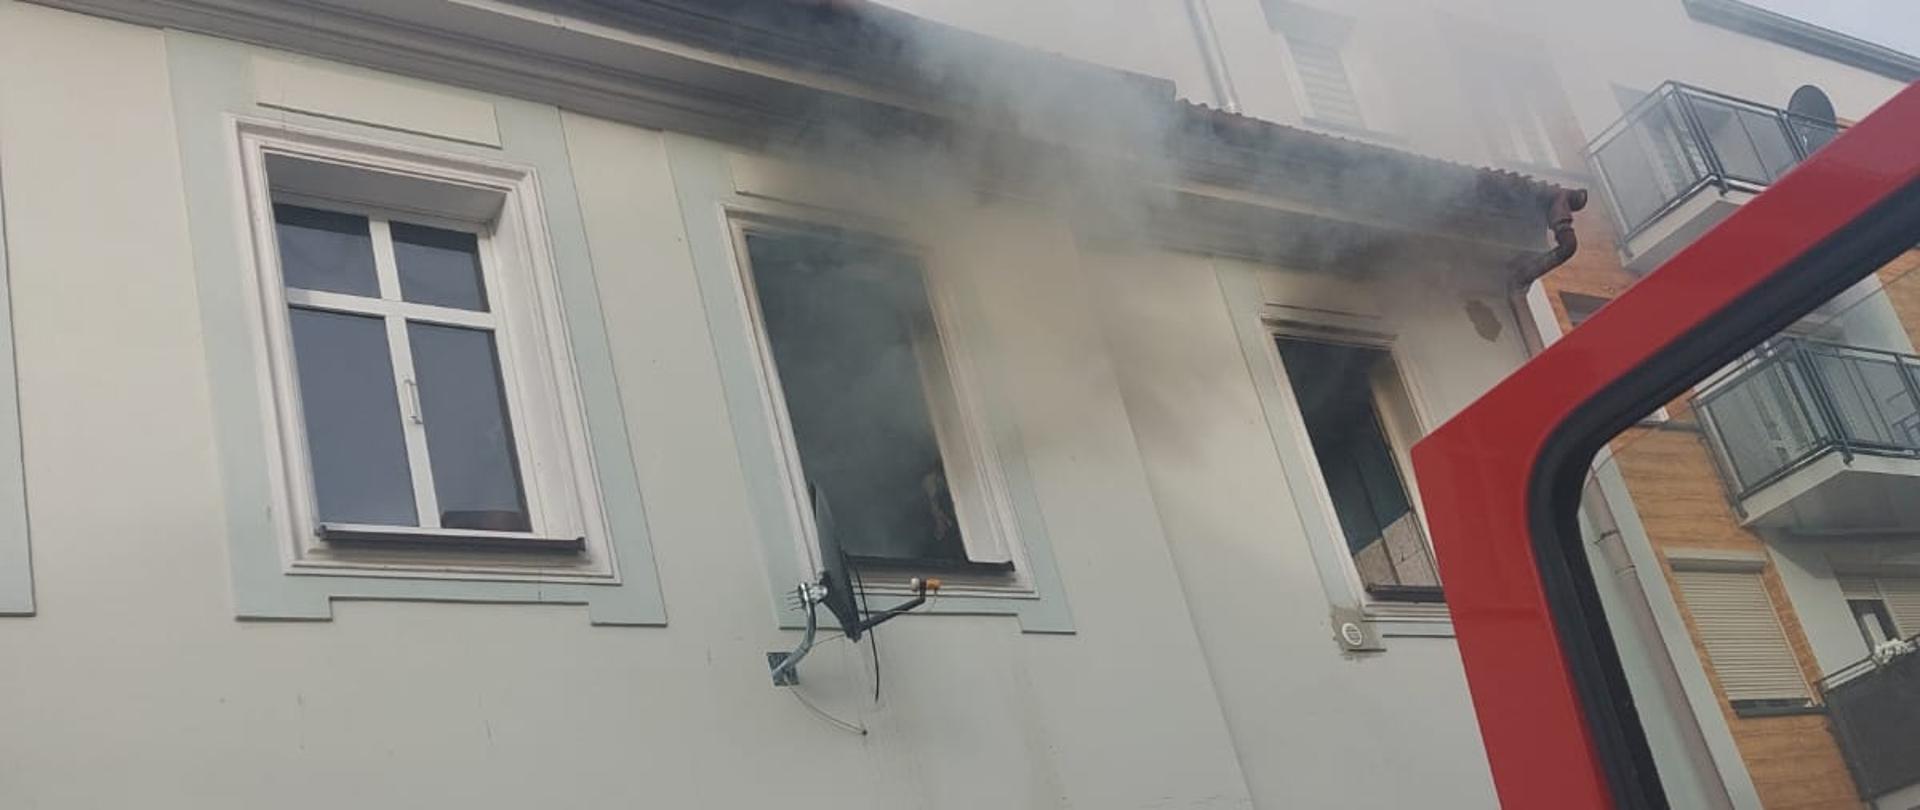 Zdjęcie przedstawia wydobywający się dym z okien mieszkania.